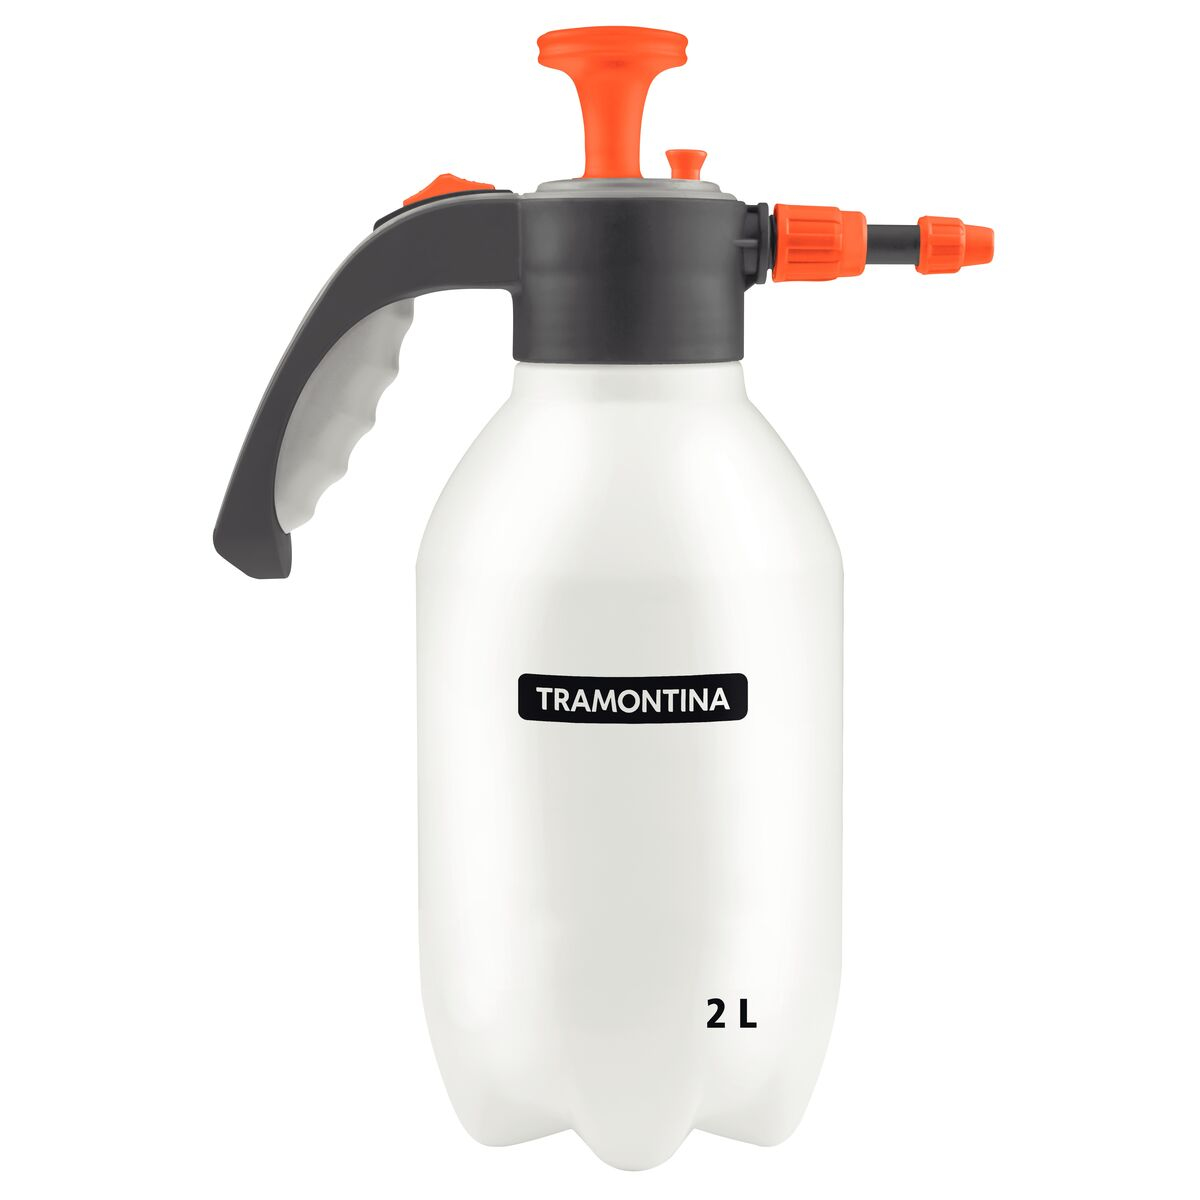 Tramontina 2-L Plastic Pre-Compression Manual Sprayer